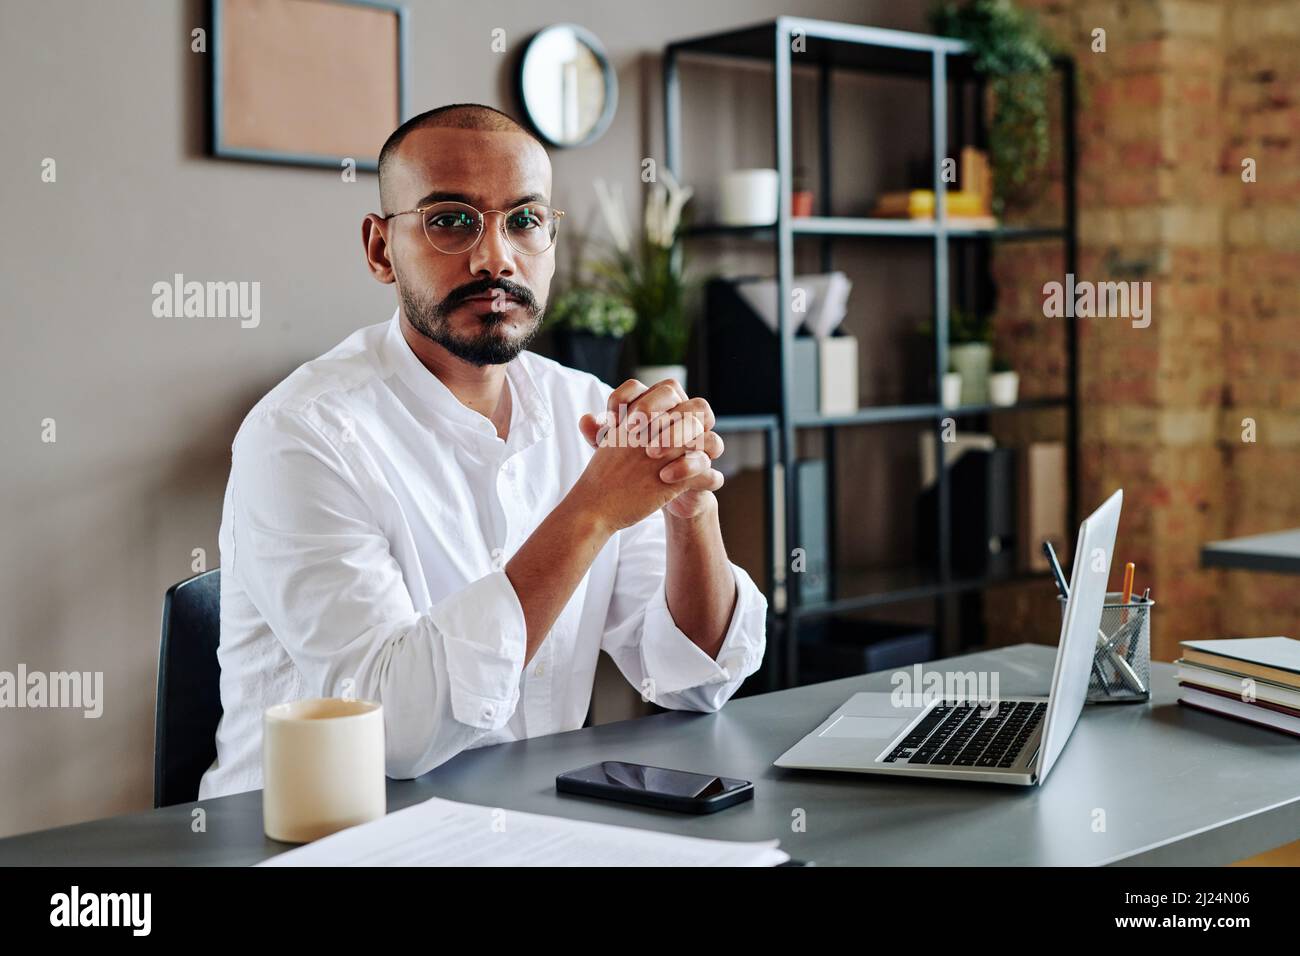 Jeune homme d'affaires contemporain qui garde ses mains jointes devant lui tout en étant assis sur son lieu de travail avec des gadgets Banque D'Images